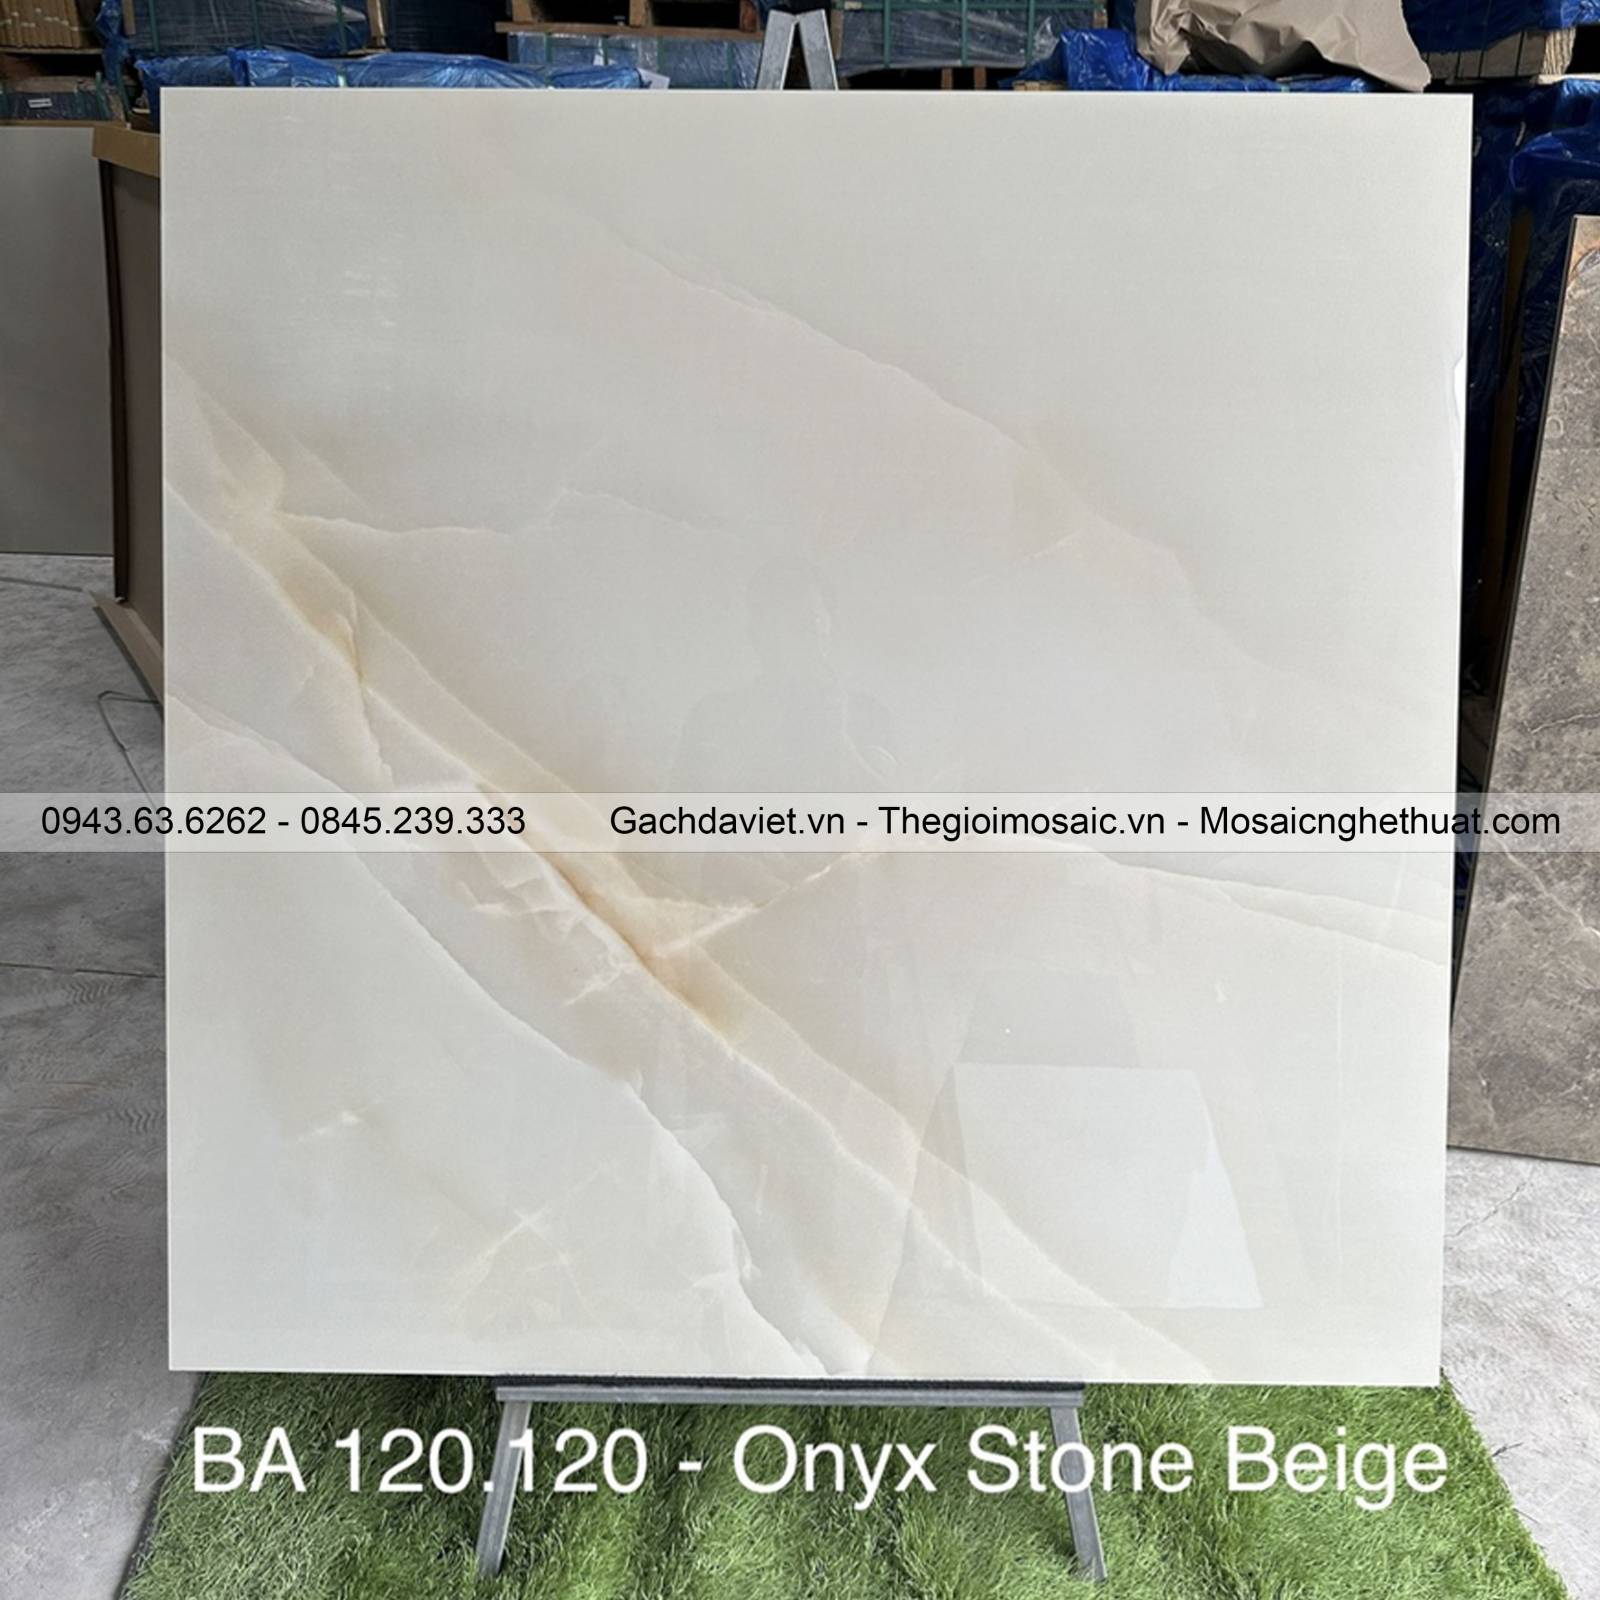 Gạch Ấn Độ nhập khẩu KT 120x120cm V-BA120-Onyx Stone Beige